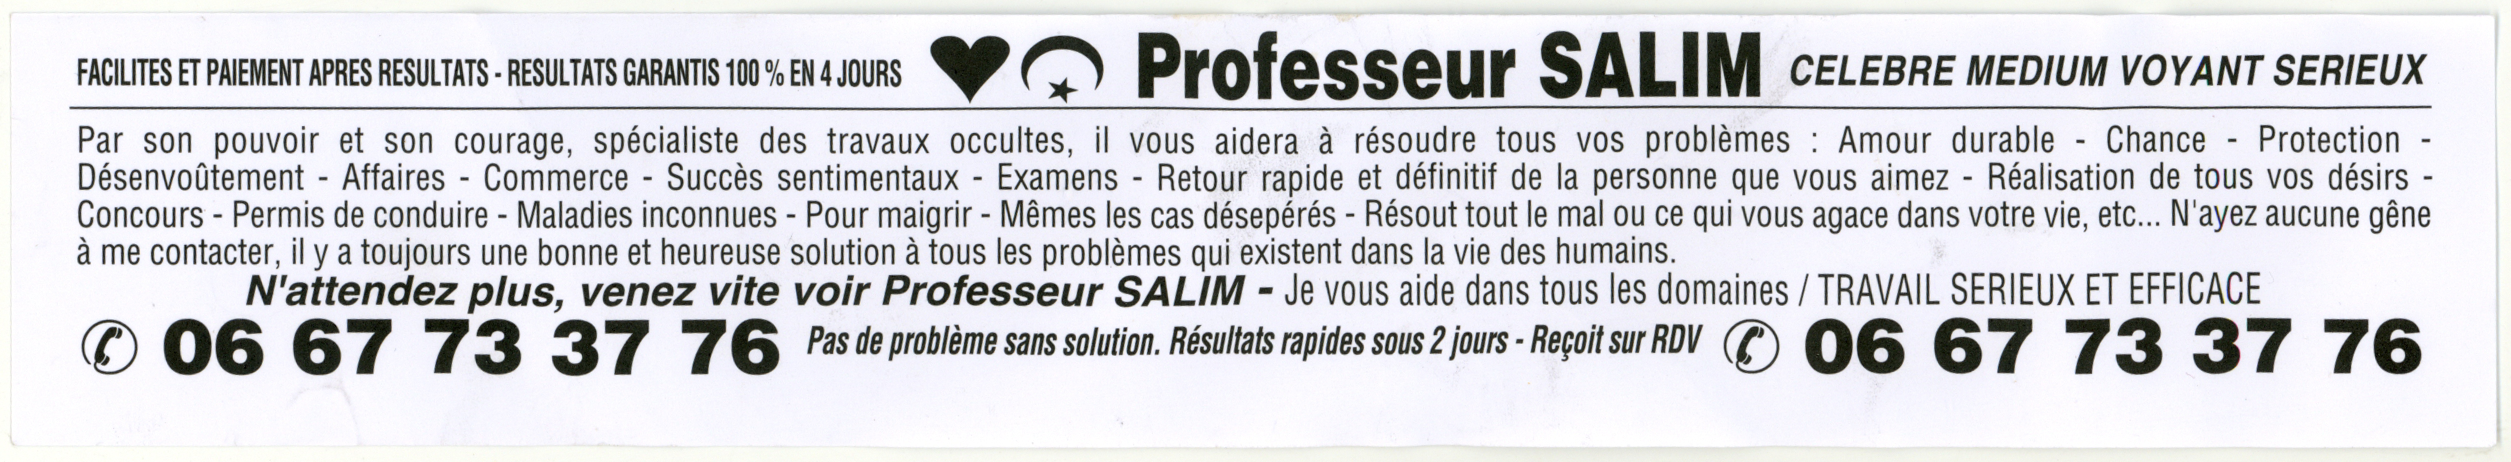 Professeur SALIM, Lyon